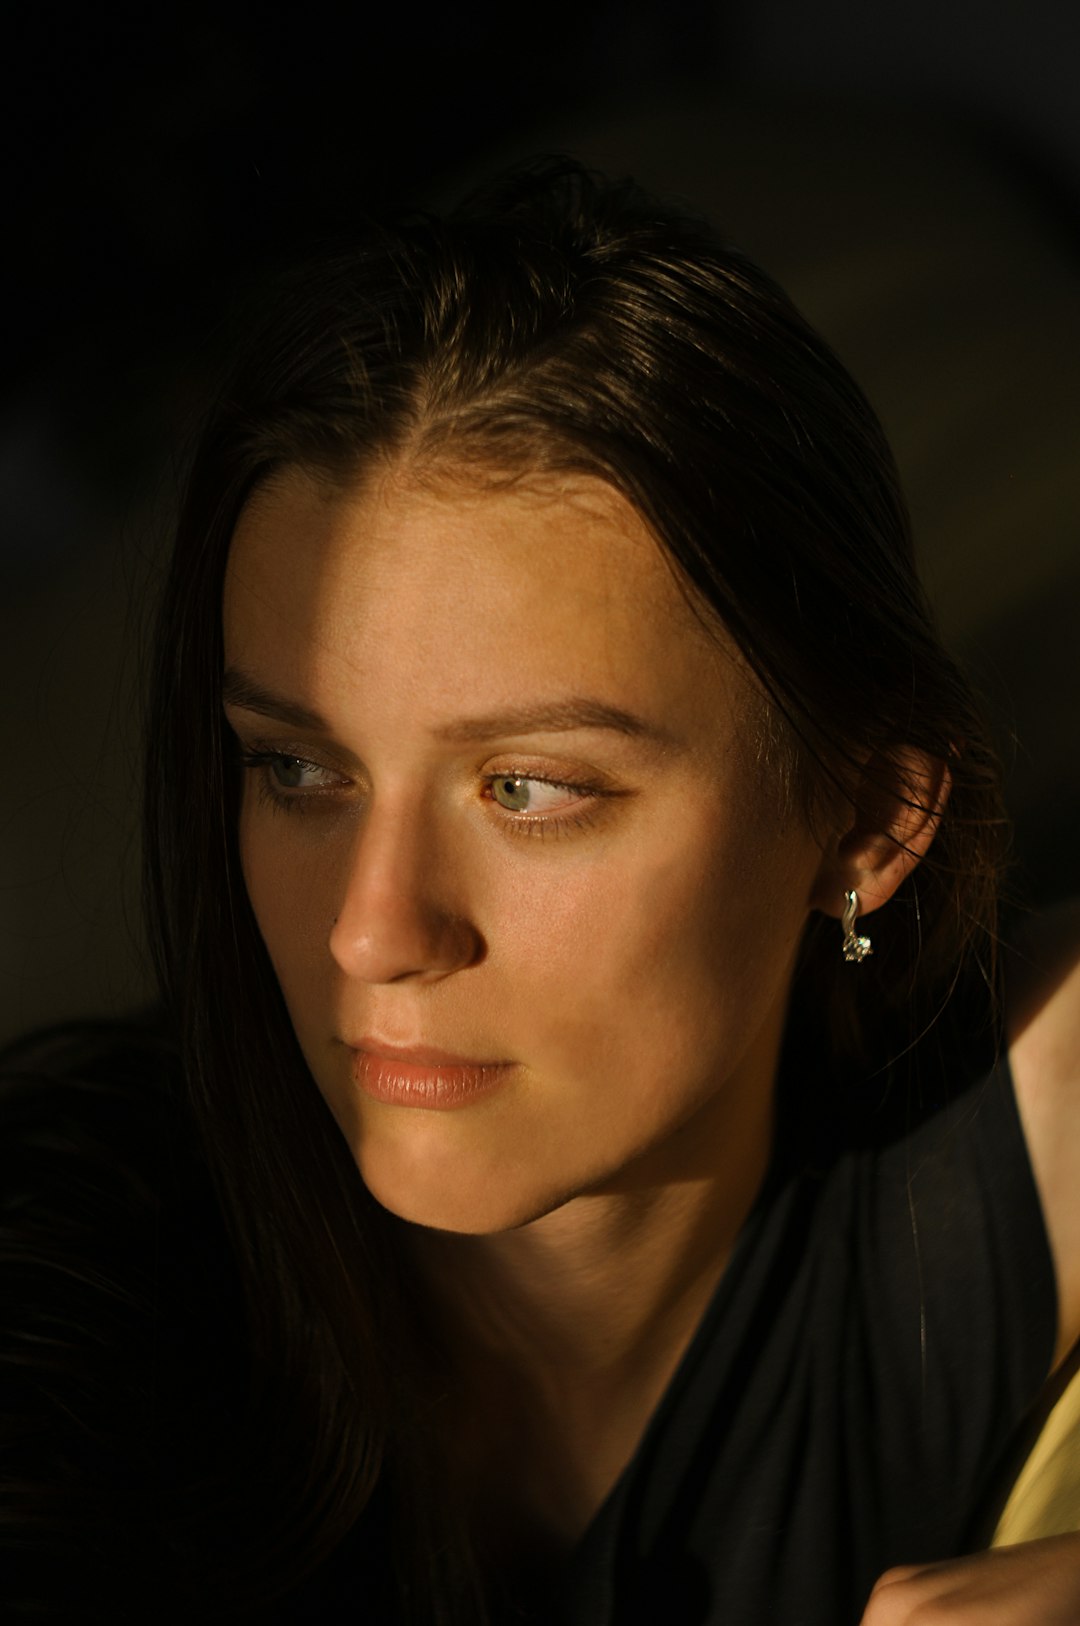 woman in black shirt wearing silver earrings